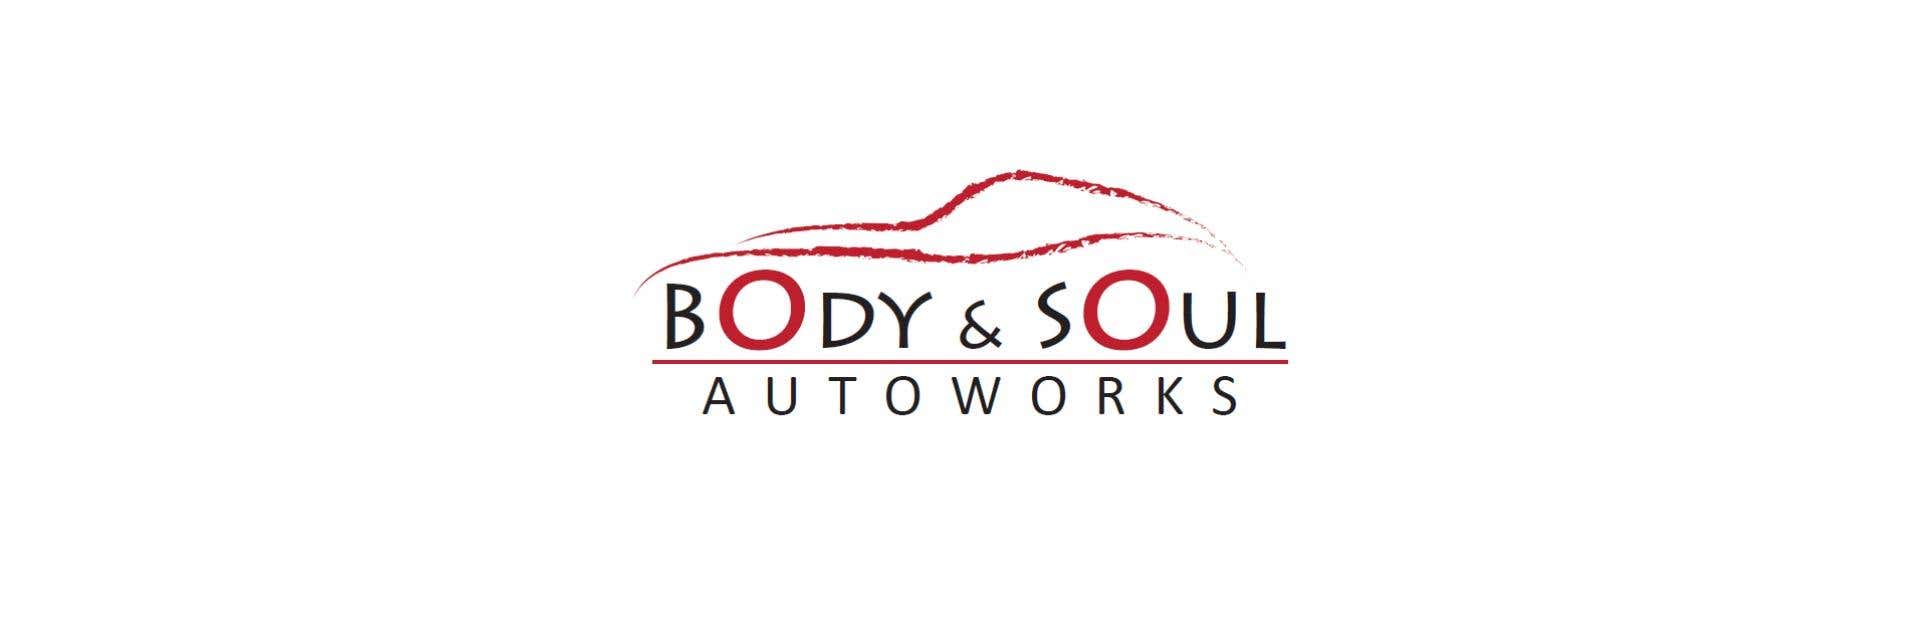 Body & Soul Autoworks